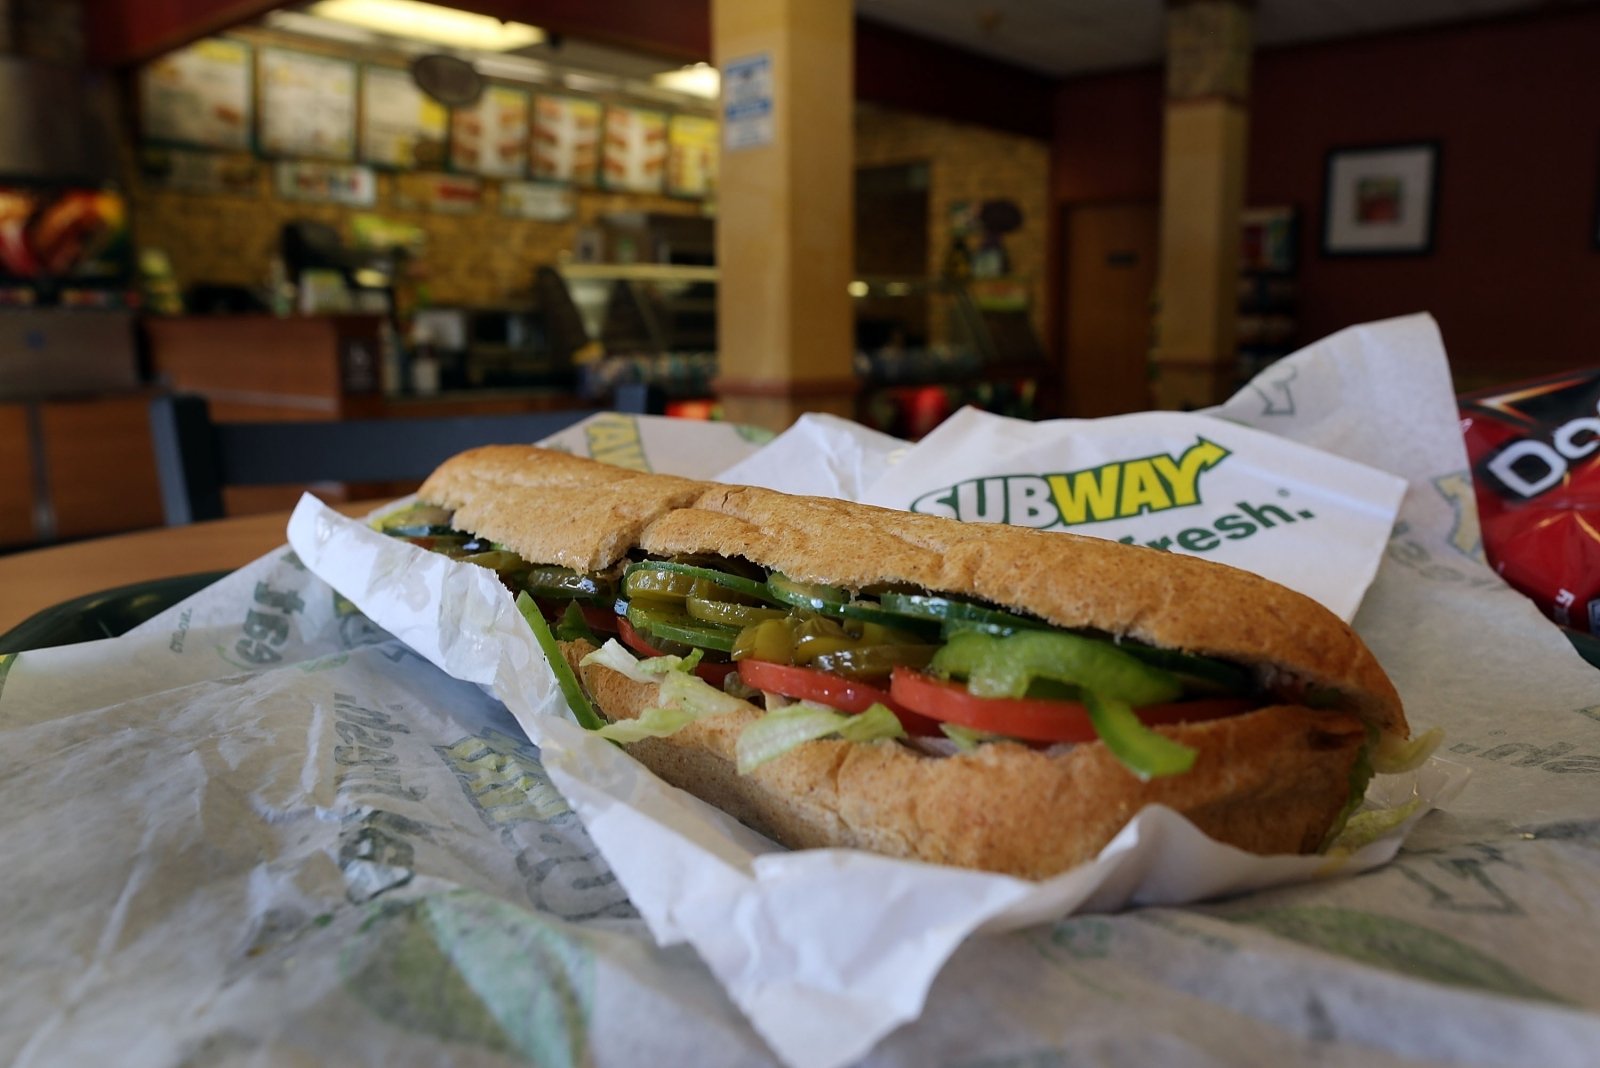 Nadzwyczajna kampania reklamowa Subway: rozdawanie darmowych kanapek w ramach zobowiązania na całe życie